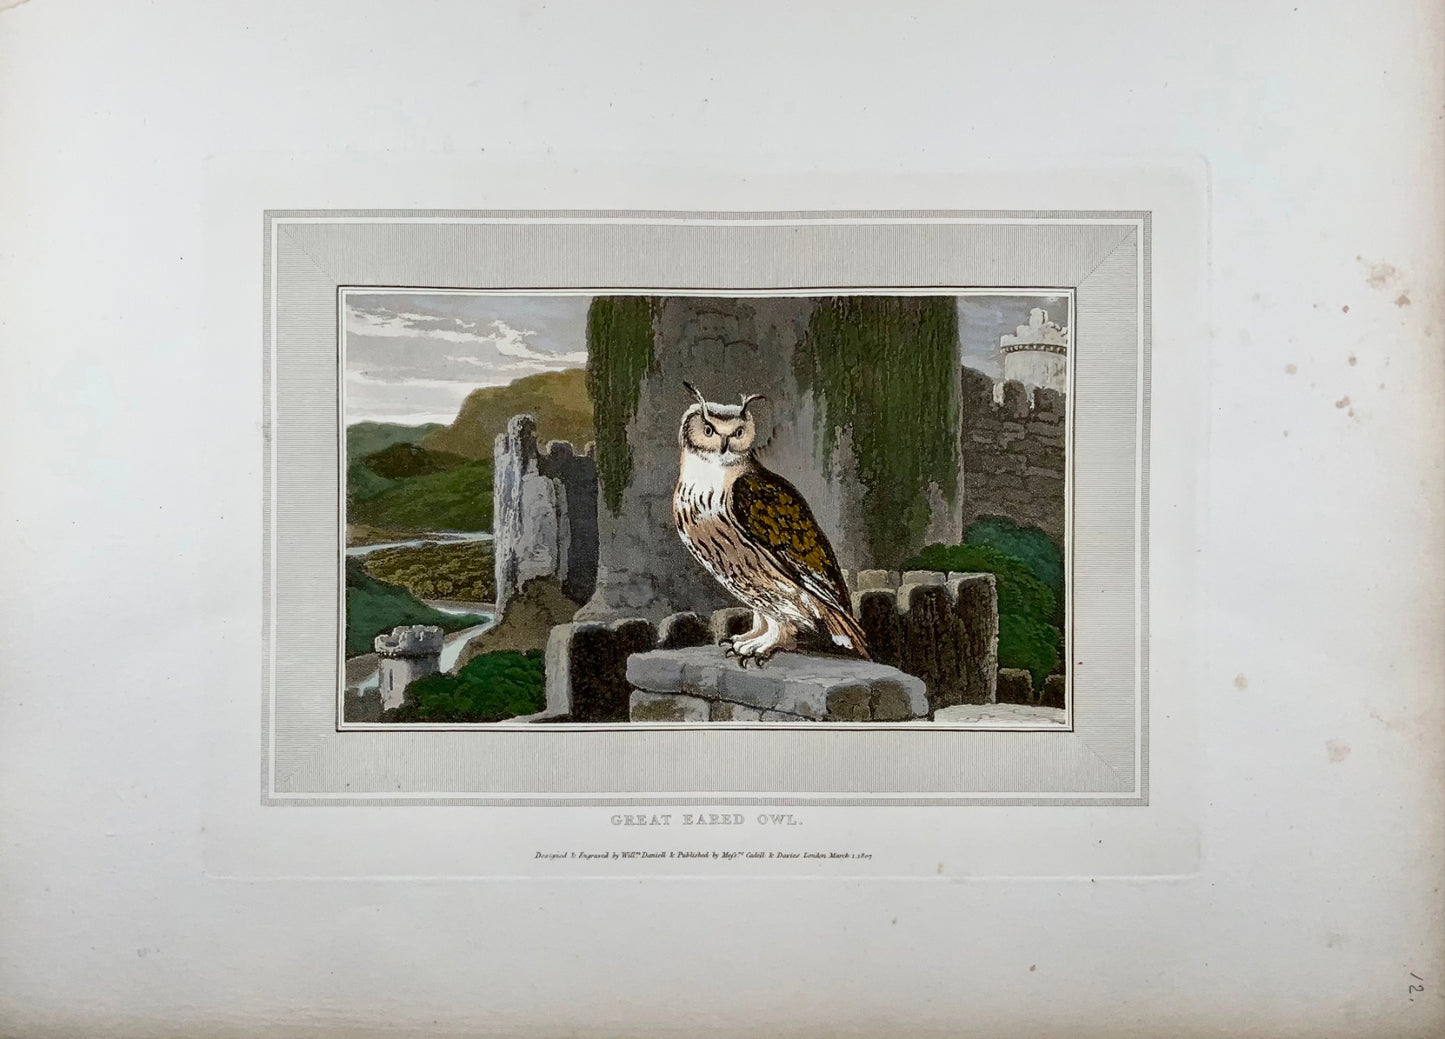 1807 William Daniell, Hibou des marais, ornithologie, aquatinte coloriée à la main